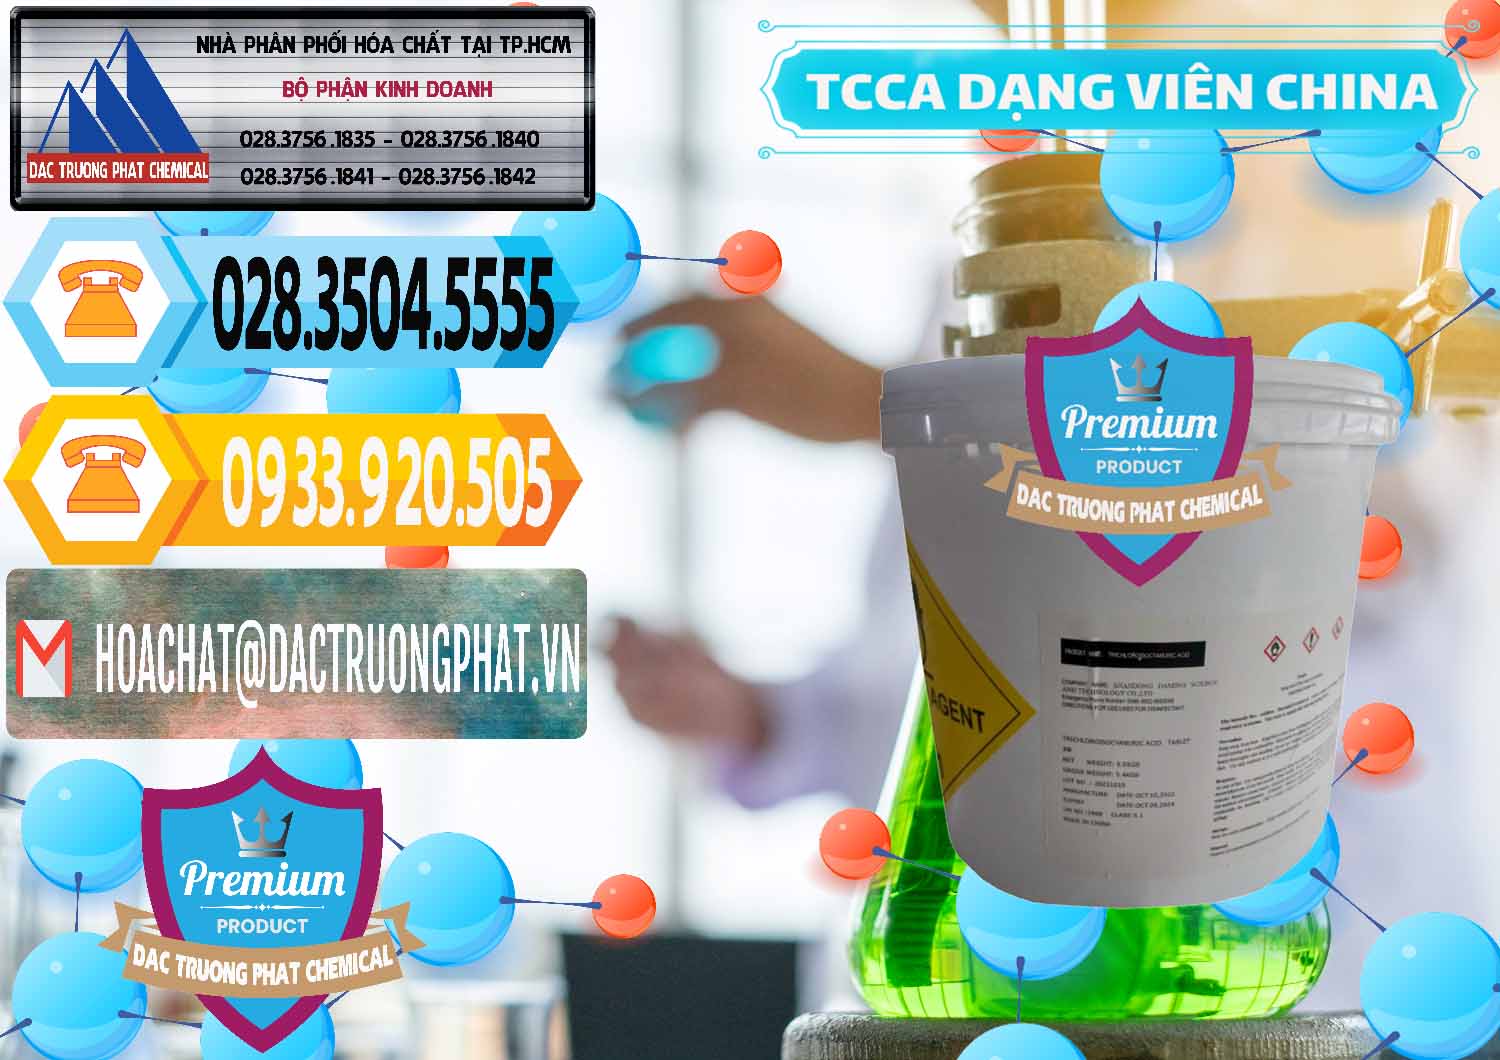 Công ty bán _ phân phối TCCA - Acid Trichloroisocyanuric Dạng Viên Thùng 5kg Trung Quốc China - 0379 - Chuyên cung cấp & nhập khẩu hóa chất tại TP.HCM - hoachattayrua.net